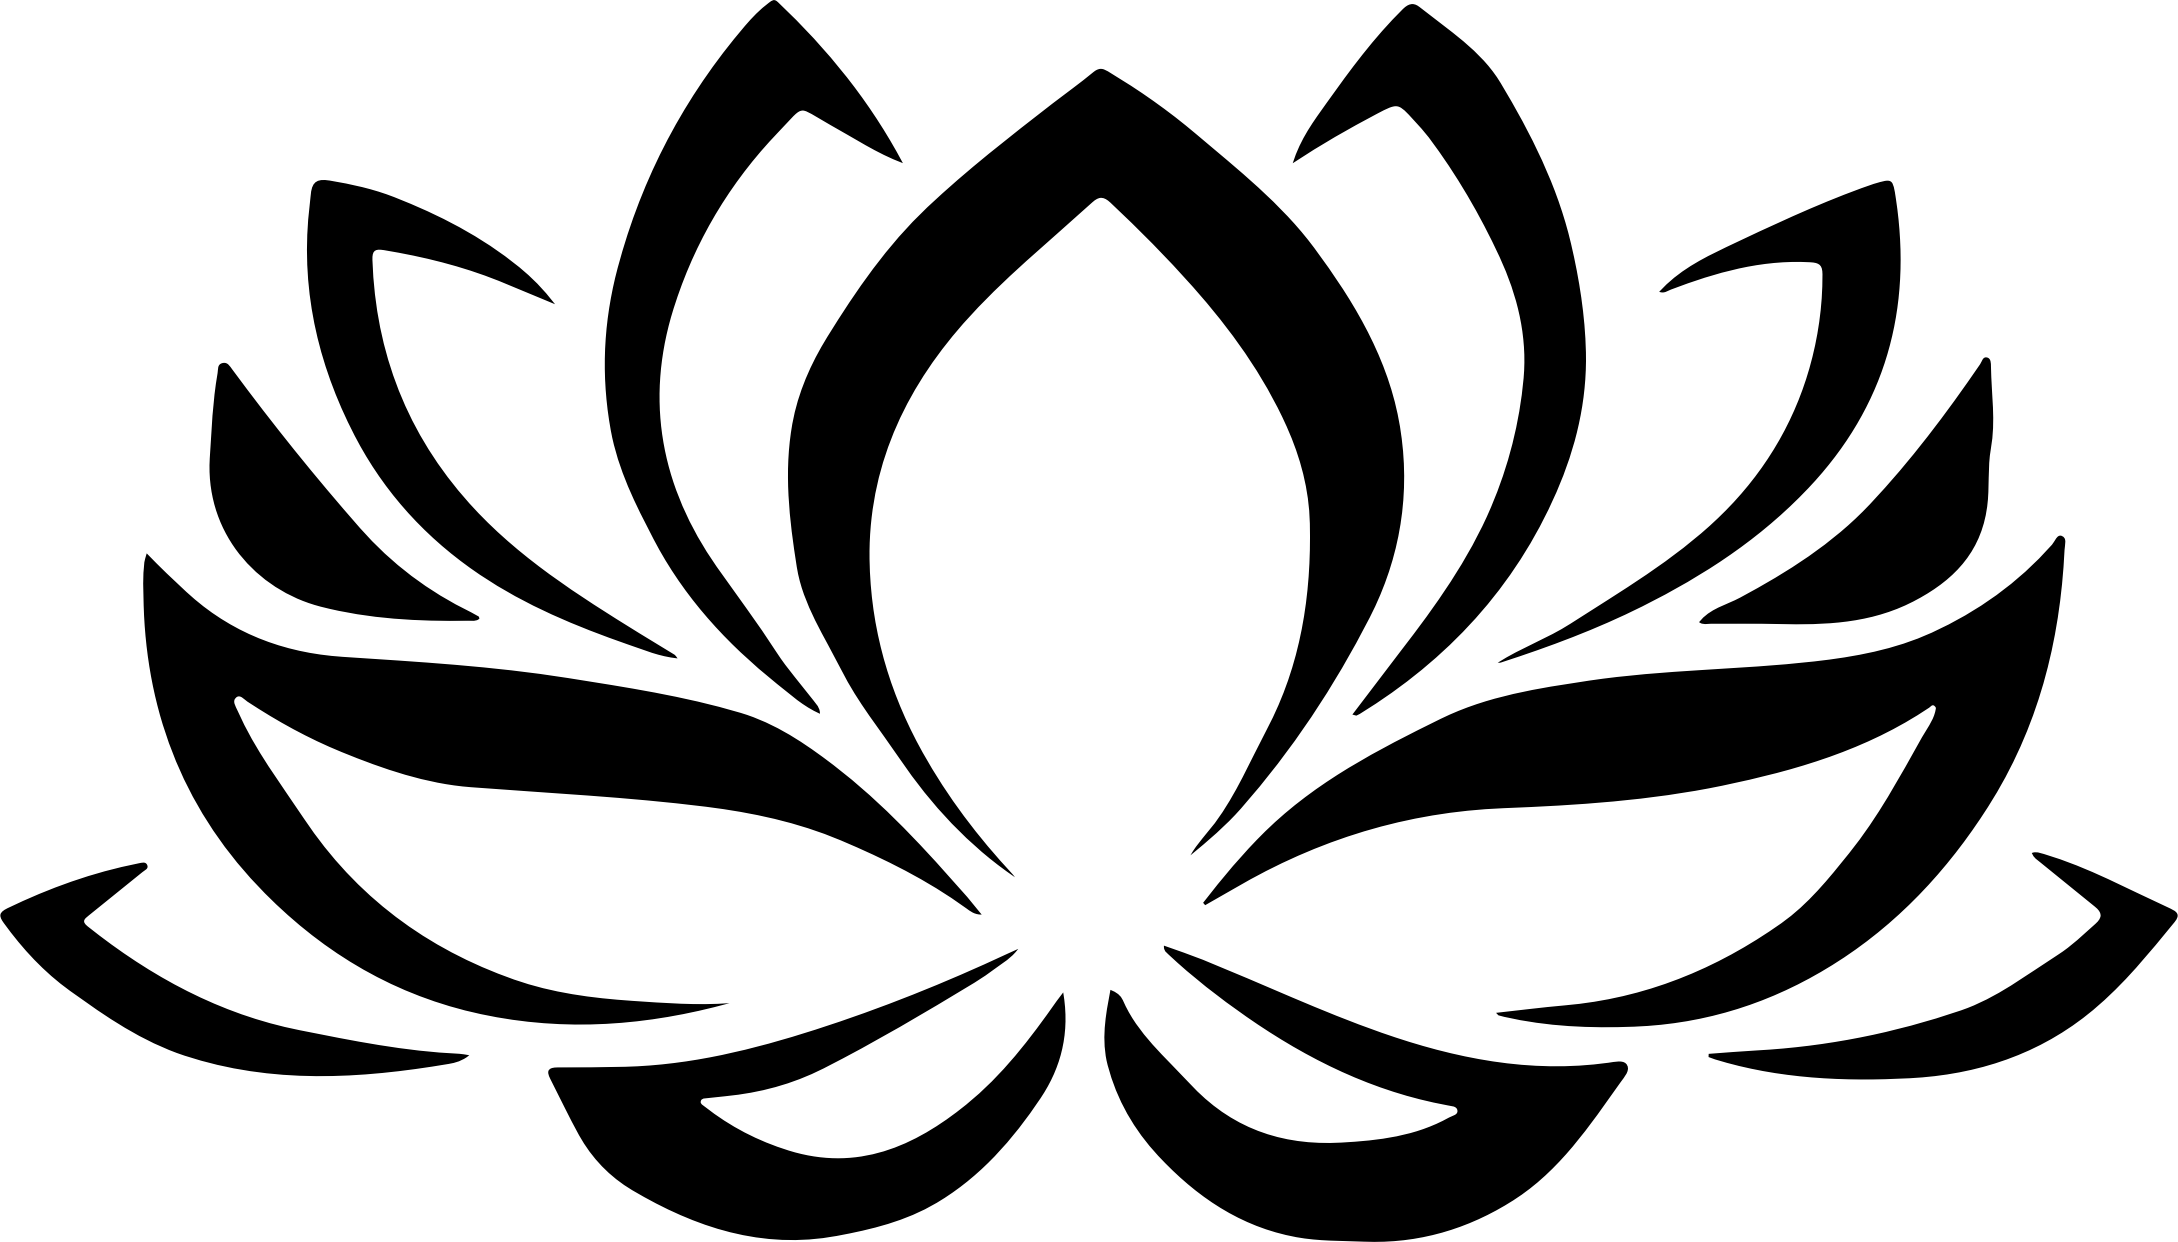 Black Lotus Flower Logo - Lotus flower image graphic